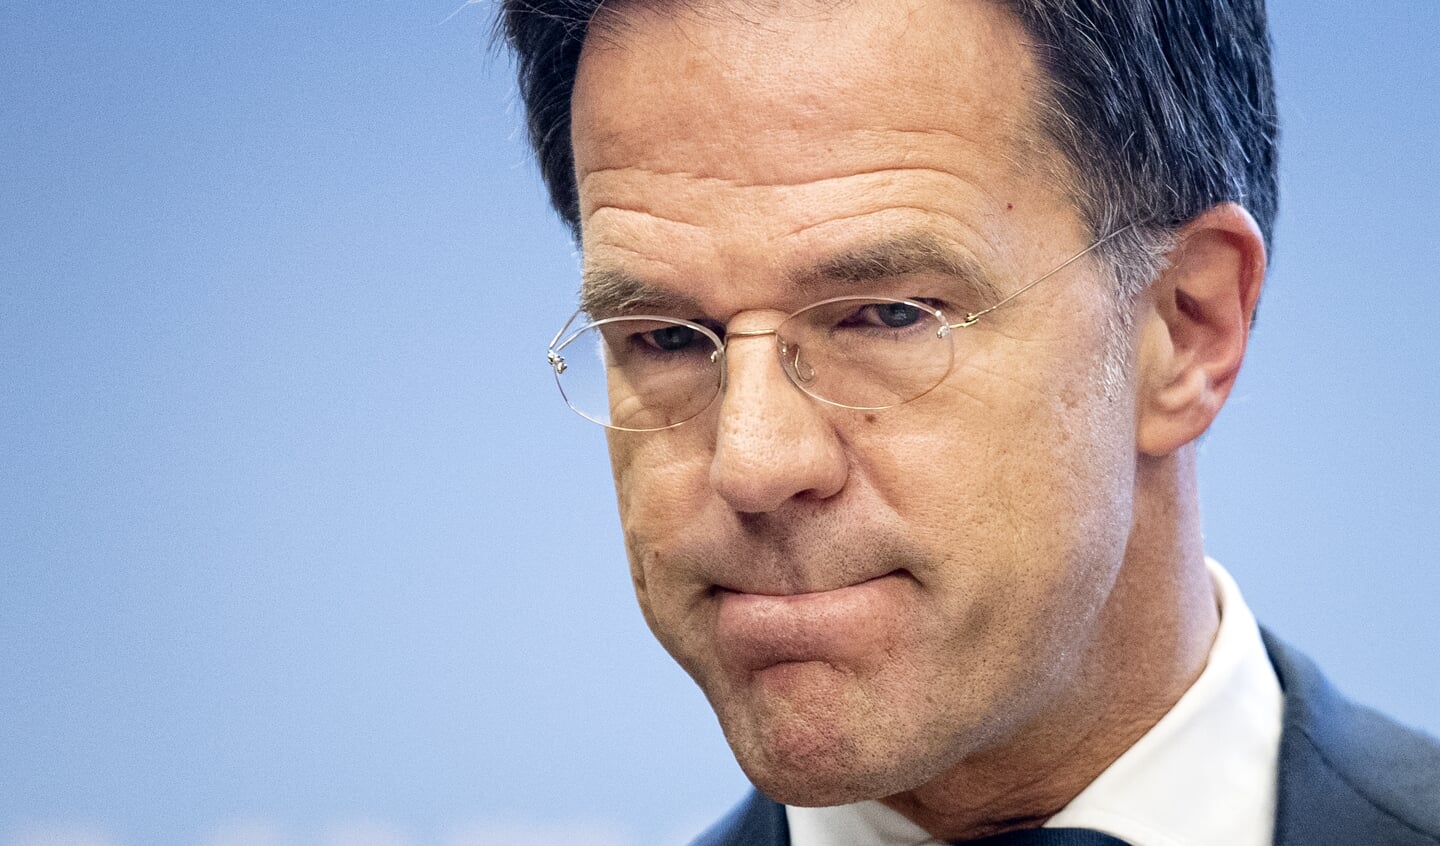 2021-11-12 19:54:55 DEN HAAG - Demissionair premier Mark Rutte geeft een toelichting op de coronamaatregelen in Nederland. ANP SEM VAN DER WAL